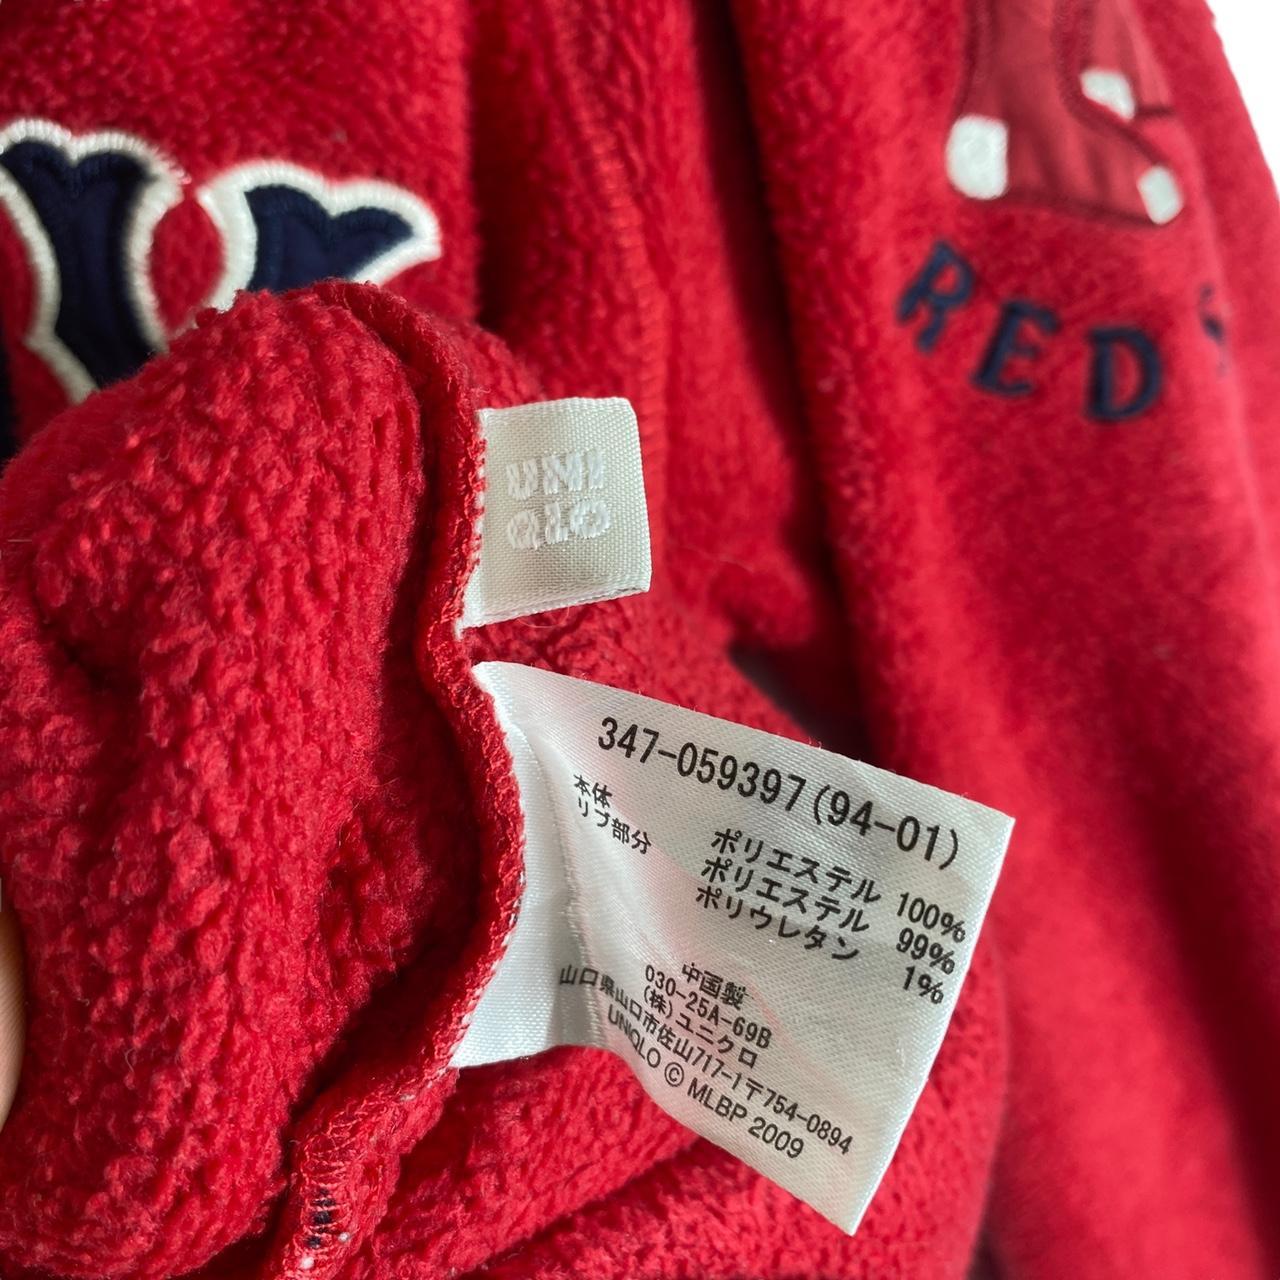 3/4 zip pullover Boston Red Sox baseball team - Depop